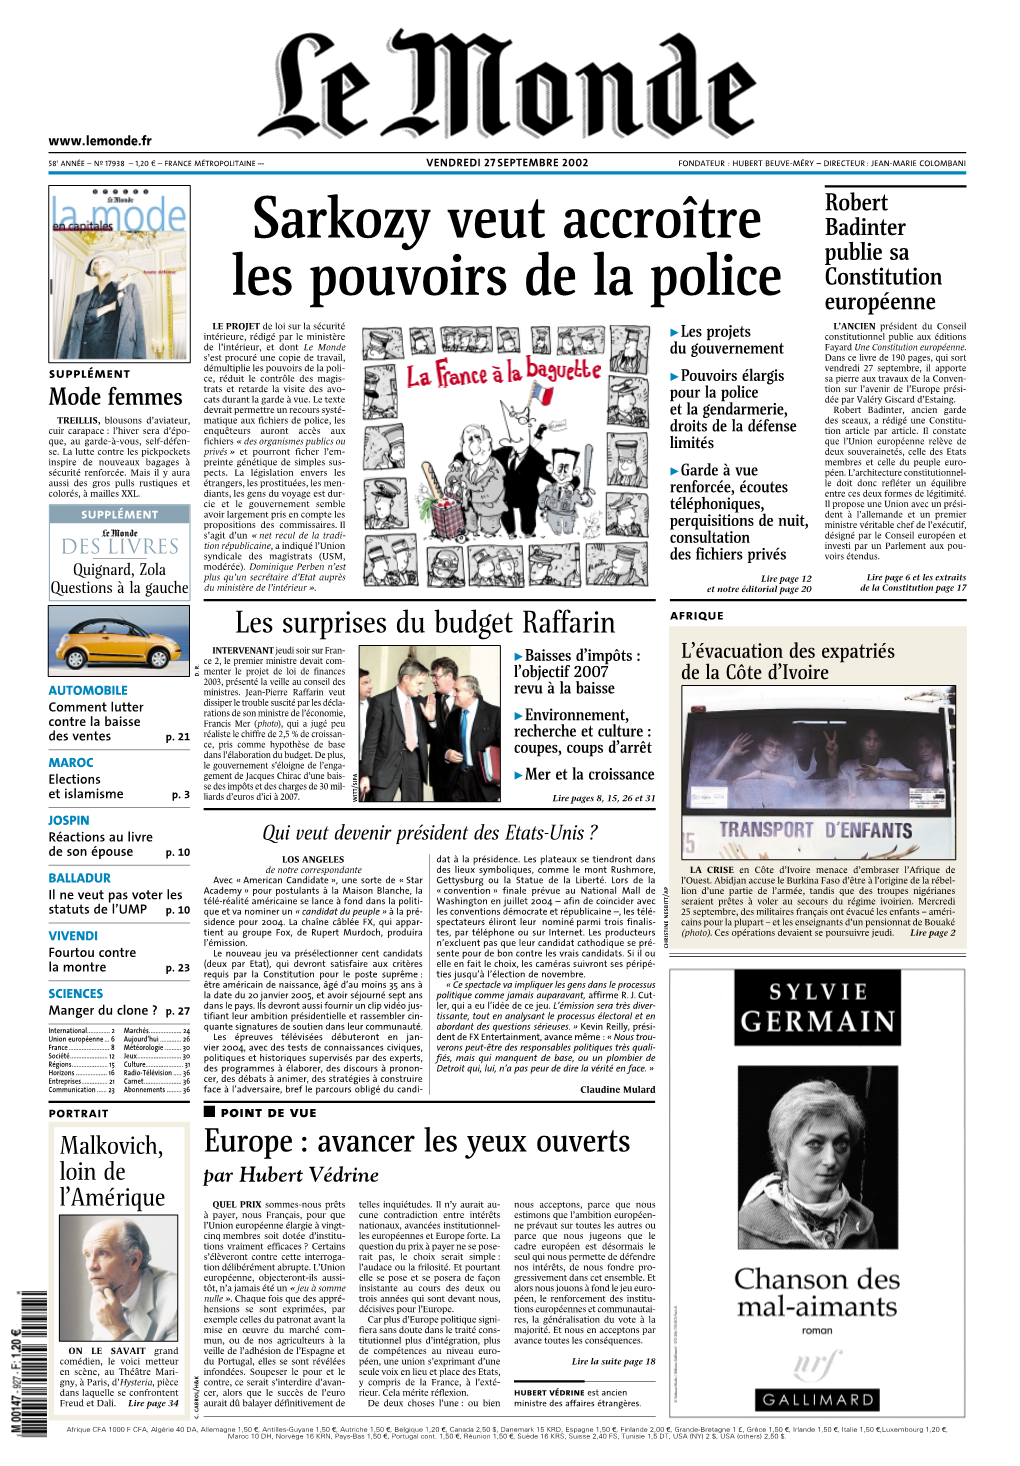 Sarkozy Veut Accroître Les Pouvoirs De La Police